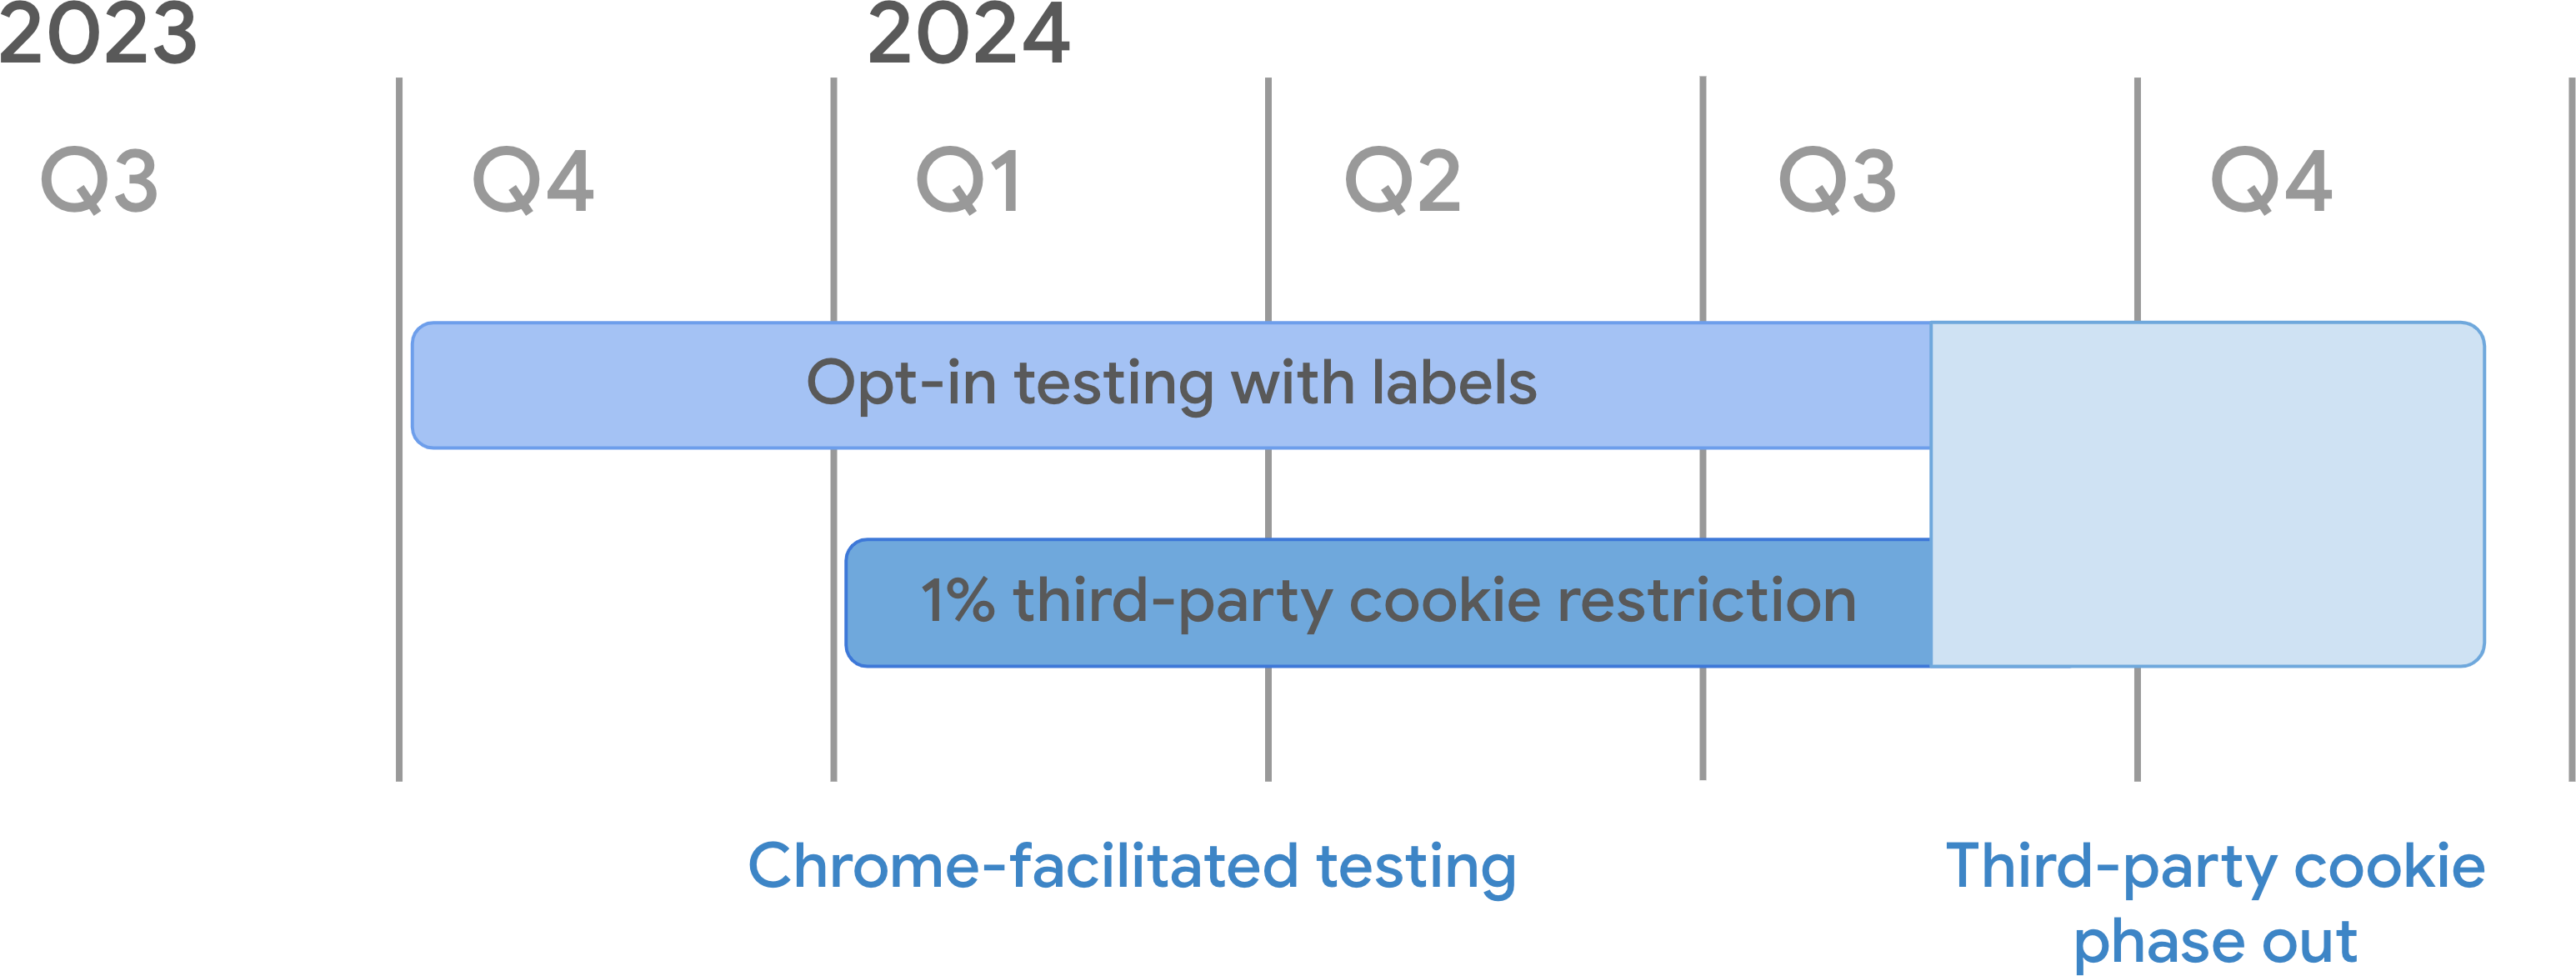 Cronograma de la baja de las cookies de terceros. Como parte de las pruebas facilitadas por Chrome, las pruebas de participación con el modo de etiquetas comenzaron en el 4o trimestre de 2023 y el modo de baja del 1% de las 3PC a partir del 4 de enero de 2024. Ambas continuarán hasta mediados del tercer trimestre de 2024, cuando comience la eliminación gradual de las cookies de terceros.